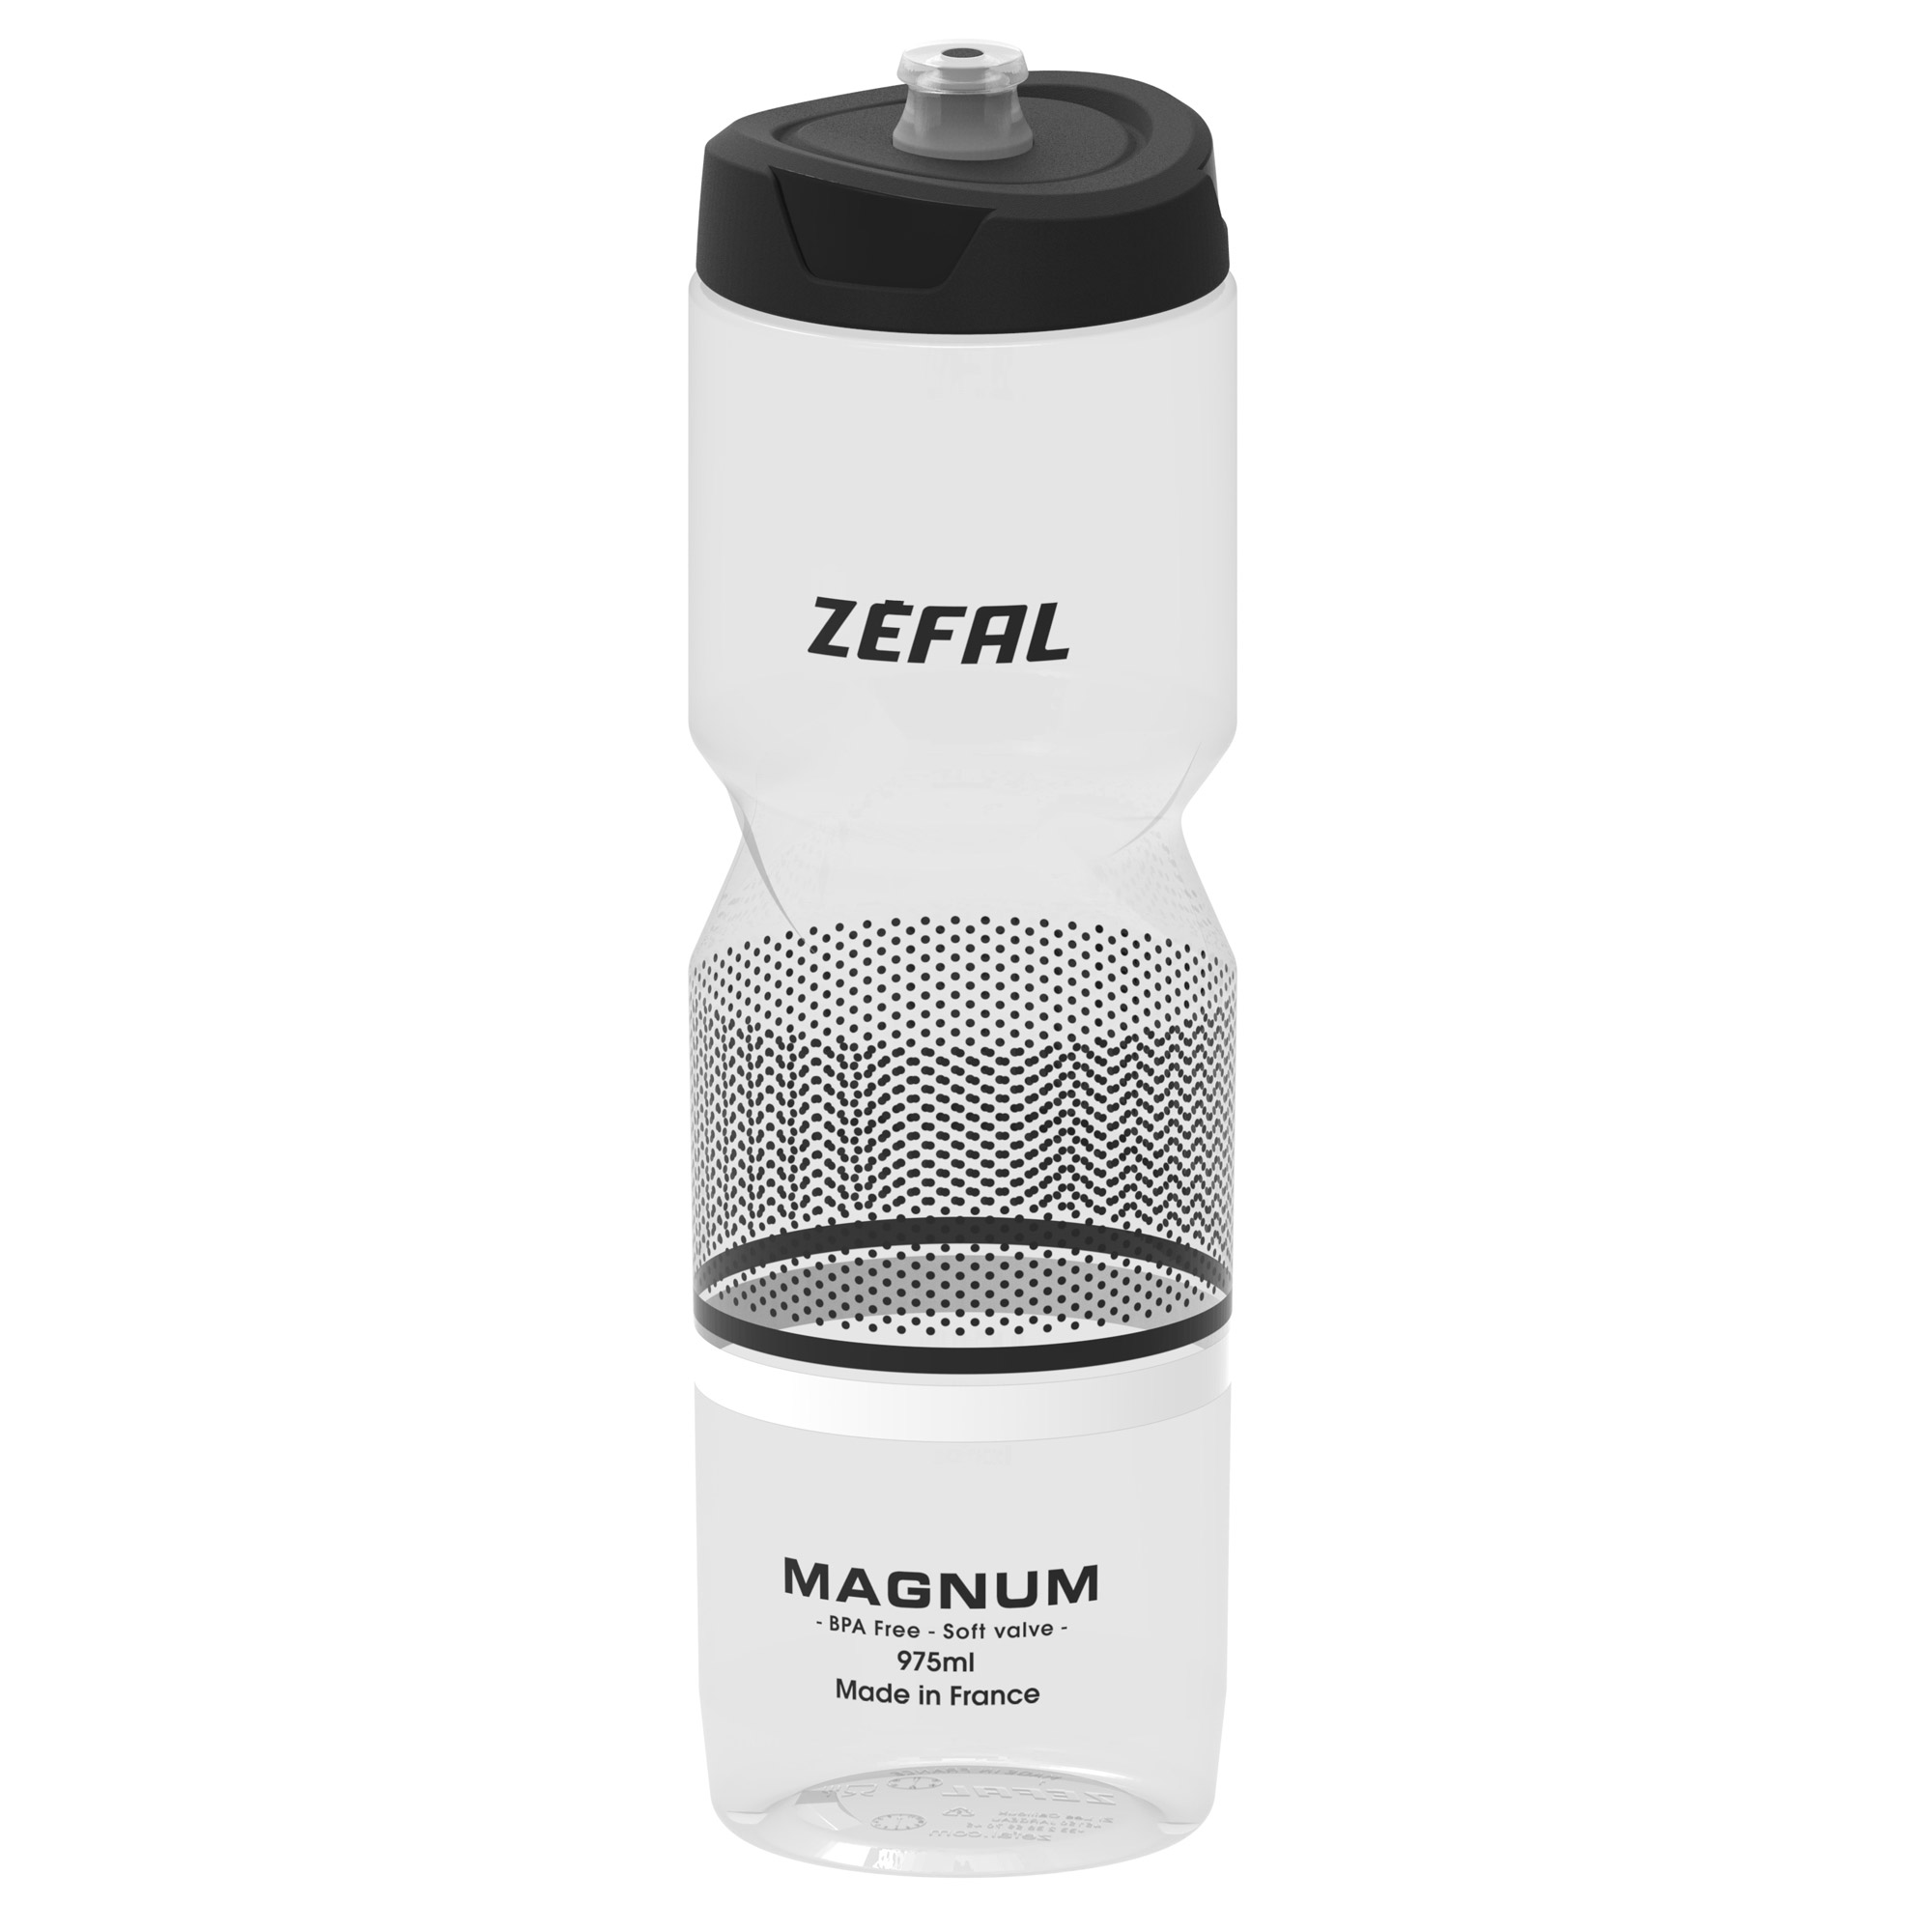 Zefal Magnum Trinkflasche 975 ml